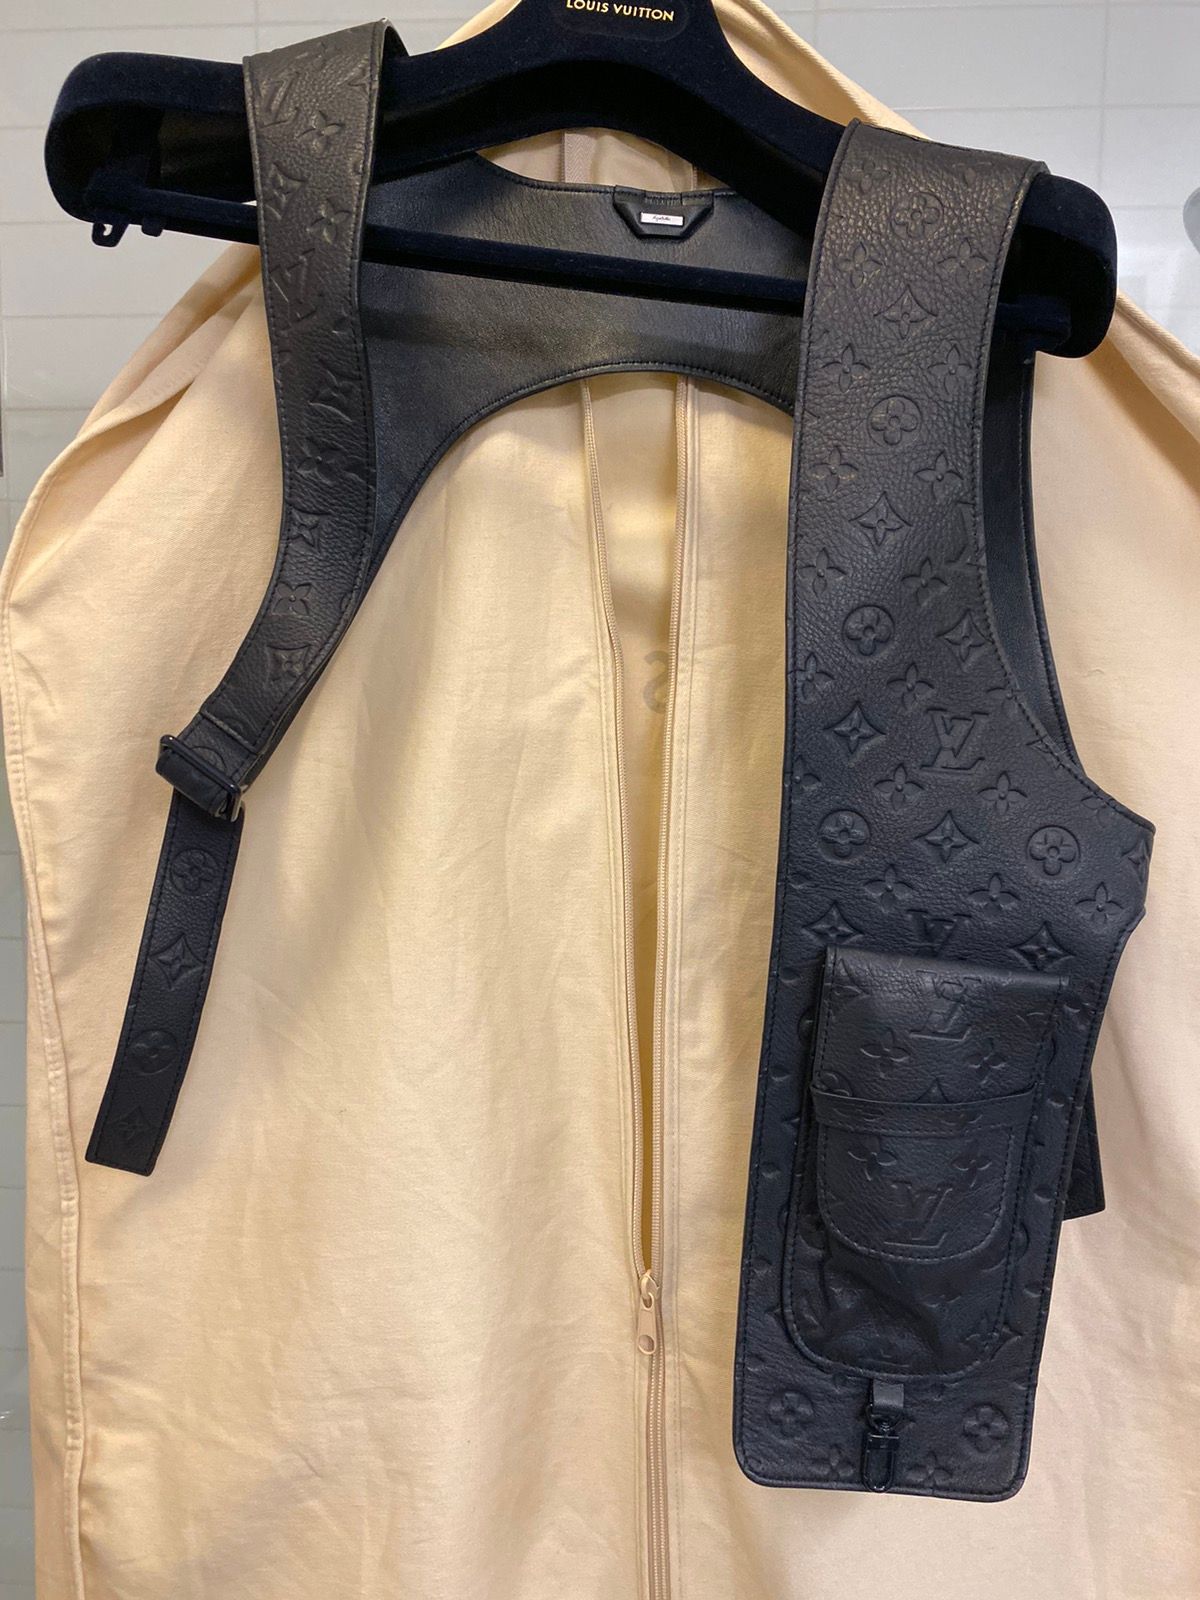 vuitton harness vest